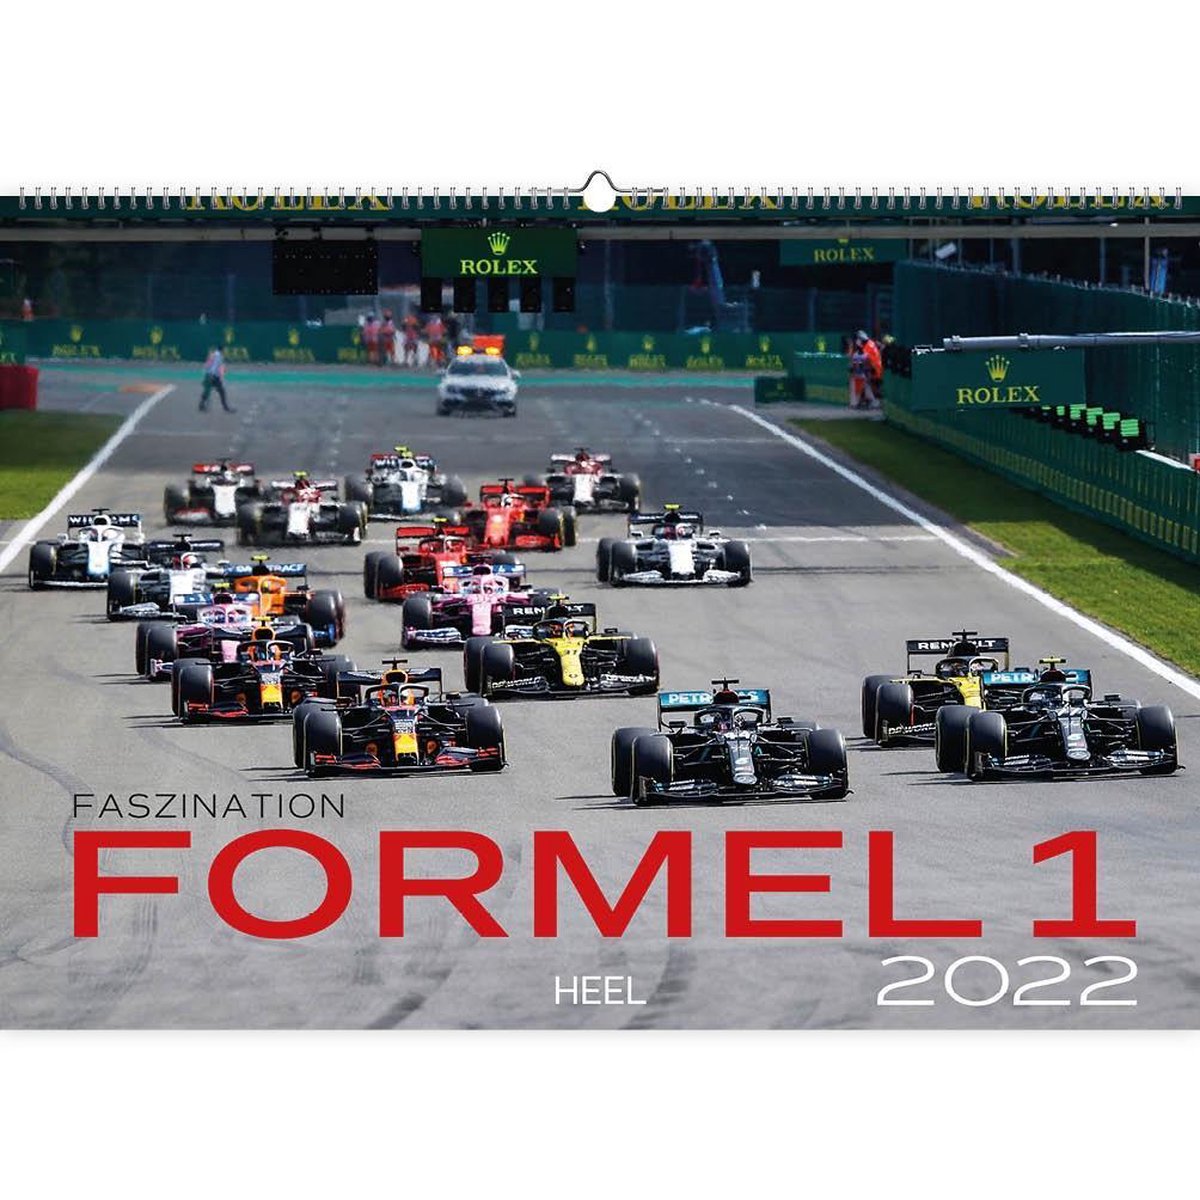 Faszination Formel 1 2022